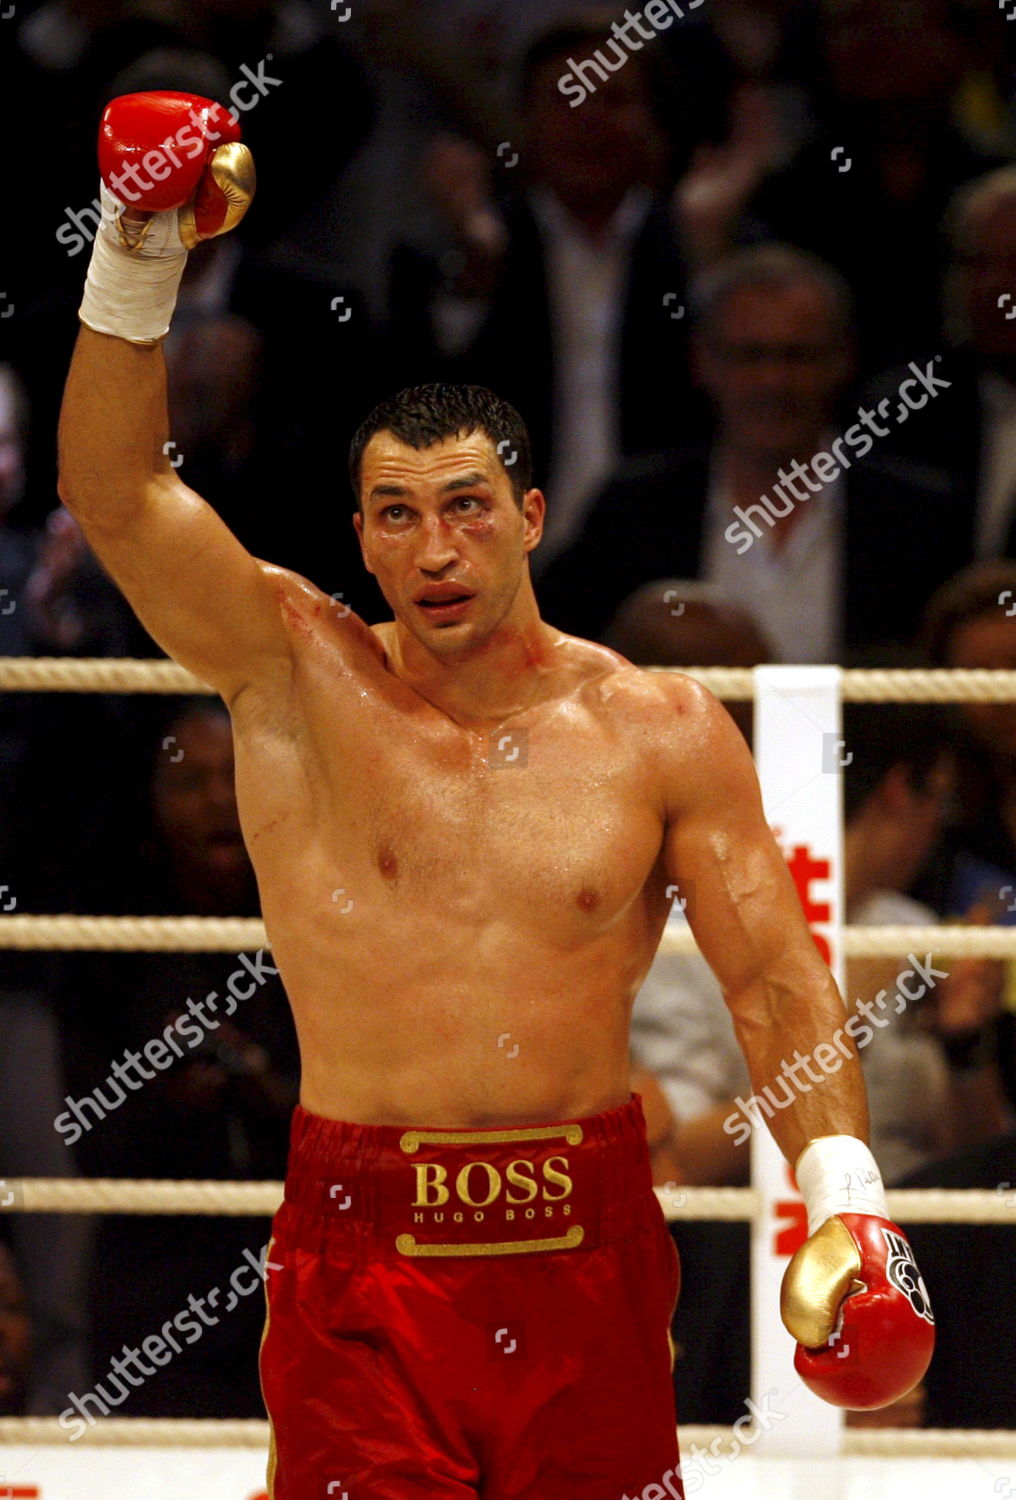 hugo boss boxing